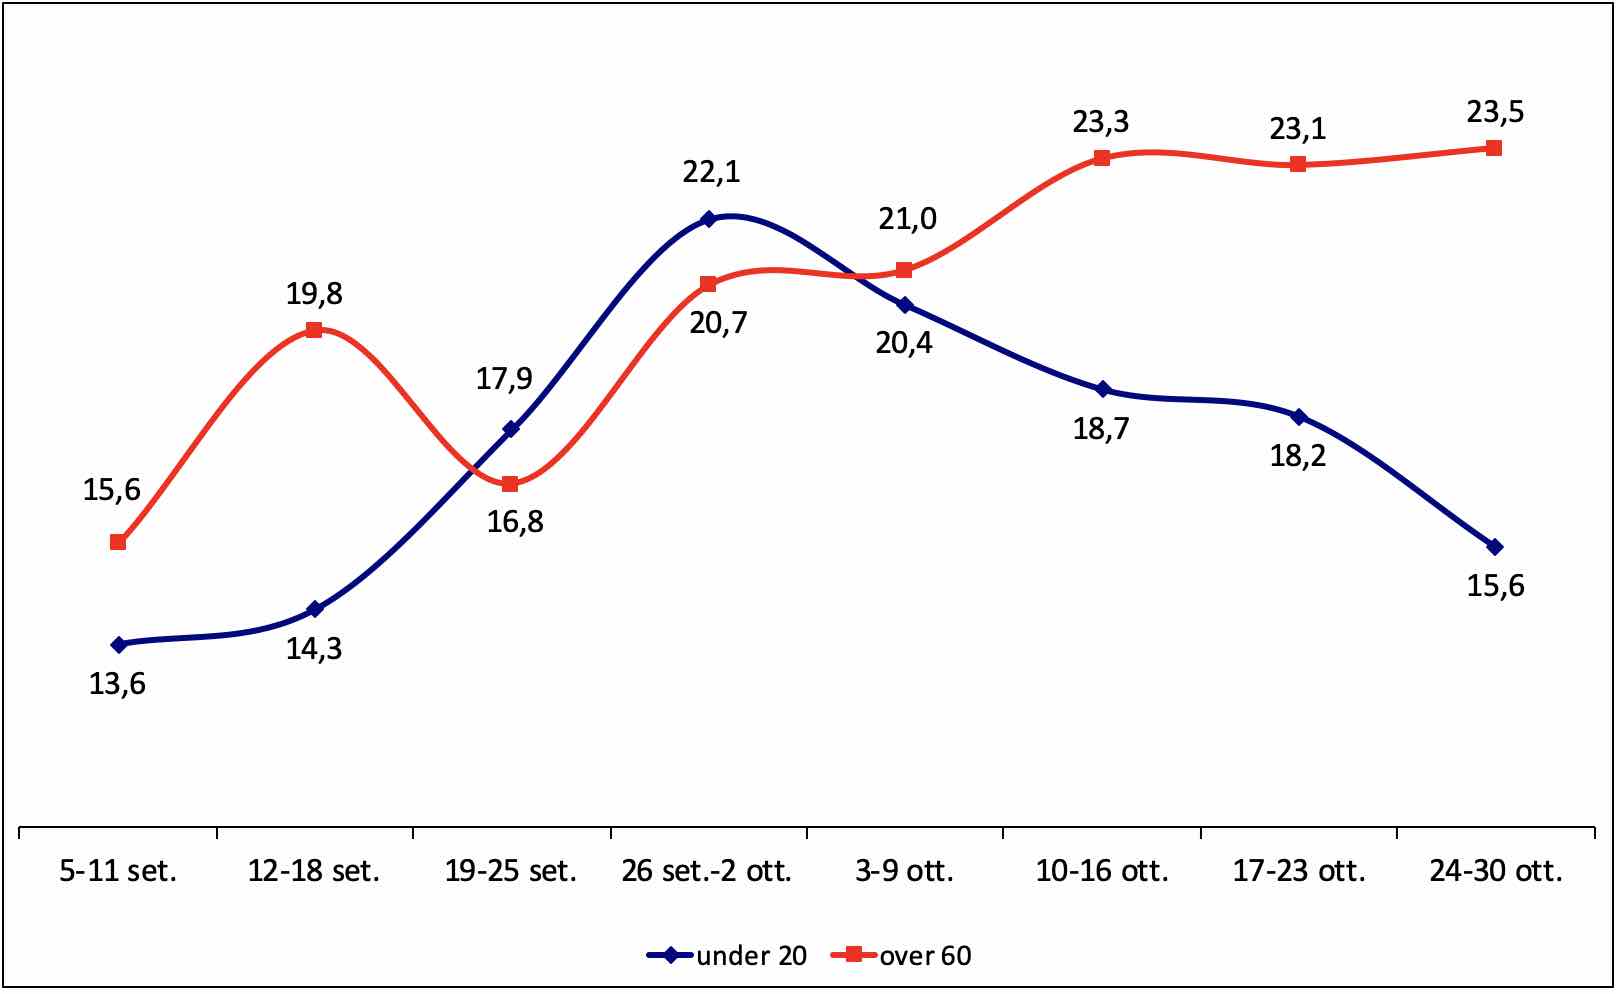 Figura 8. Percentuale di under 20 e over 60 tra i nuovi positivi Covid19 settimanali. Toscana.